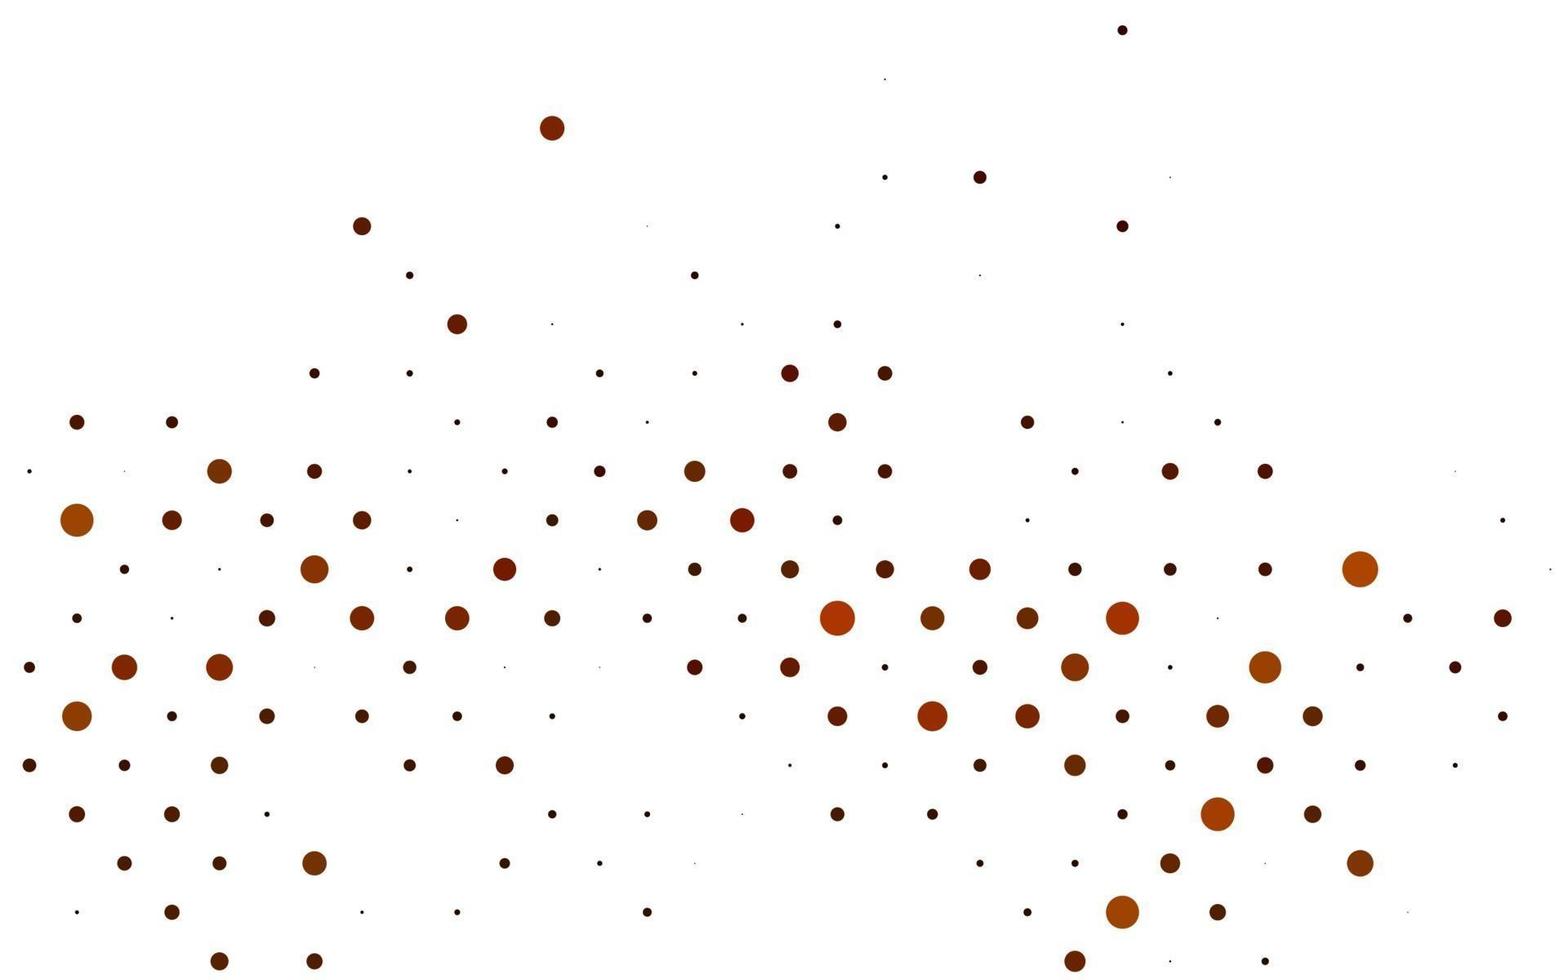 hellgelbes, orangefarbenes Vektorlayout mit Kreisformen. vektor